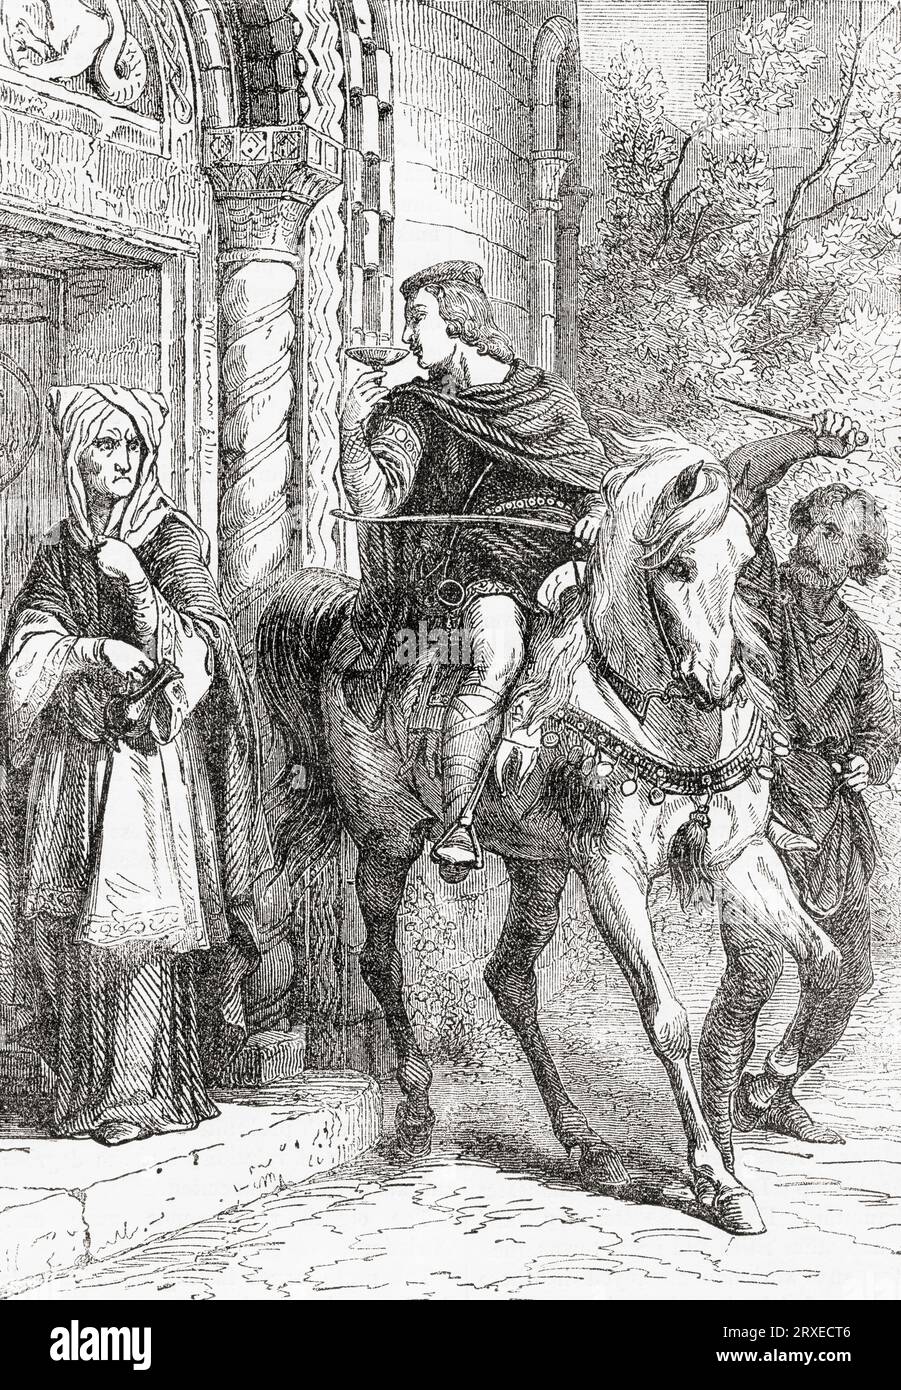 L'assassinio di Edoardo il Martire. Edoardo, 962 – 978, spesso chiamato Martire. Re degli inglesi dal 975 fino al suo omicidio nel 978. Da Cassell's Illustrated History of England, pubblicato nel 1857. Foto Stock